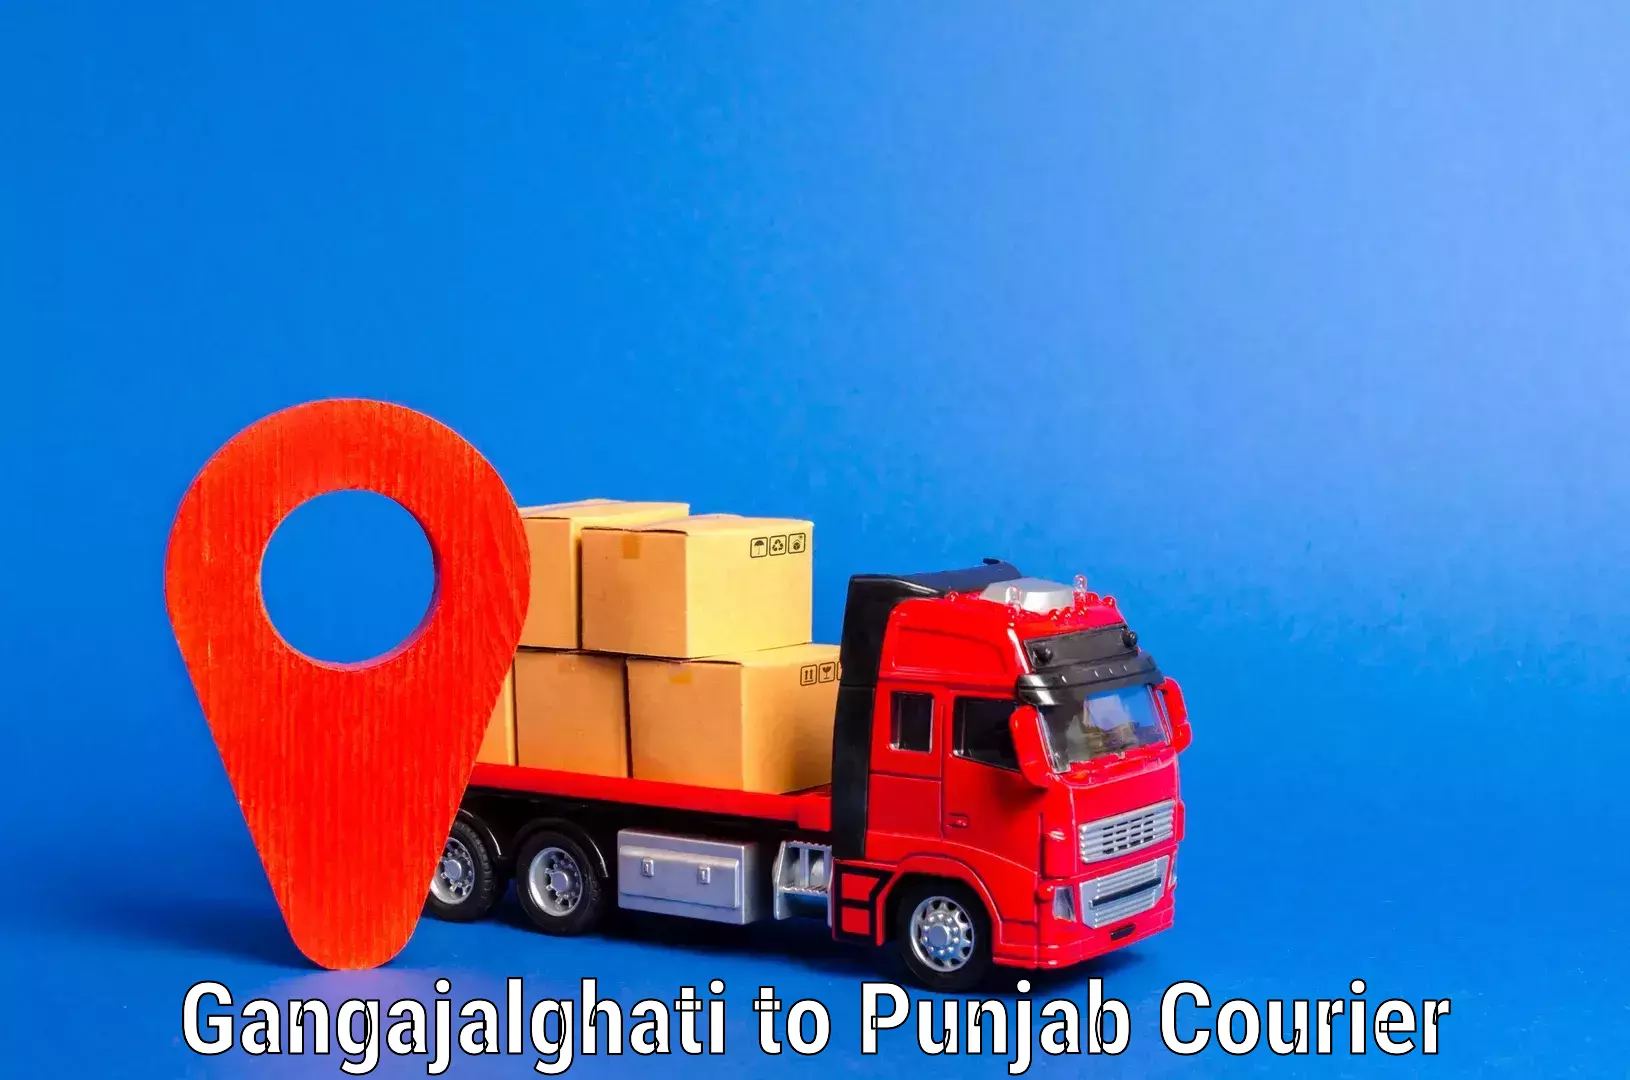 Reliable furniture transport Gangajalghati to Punjab